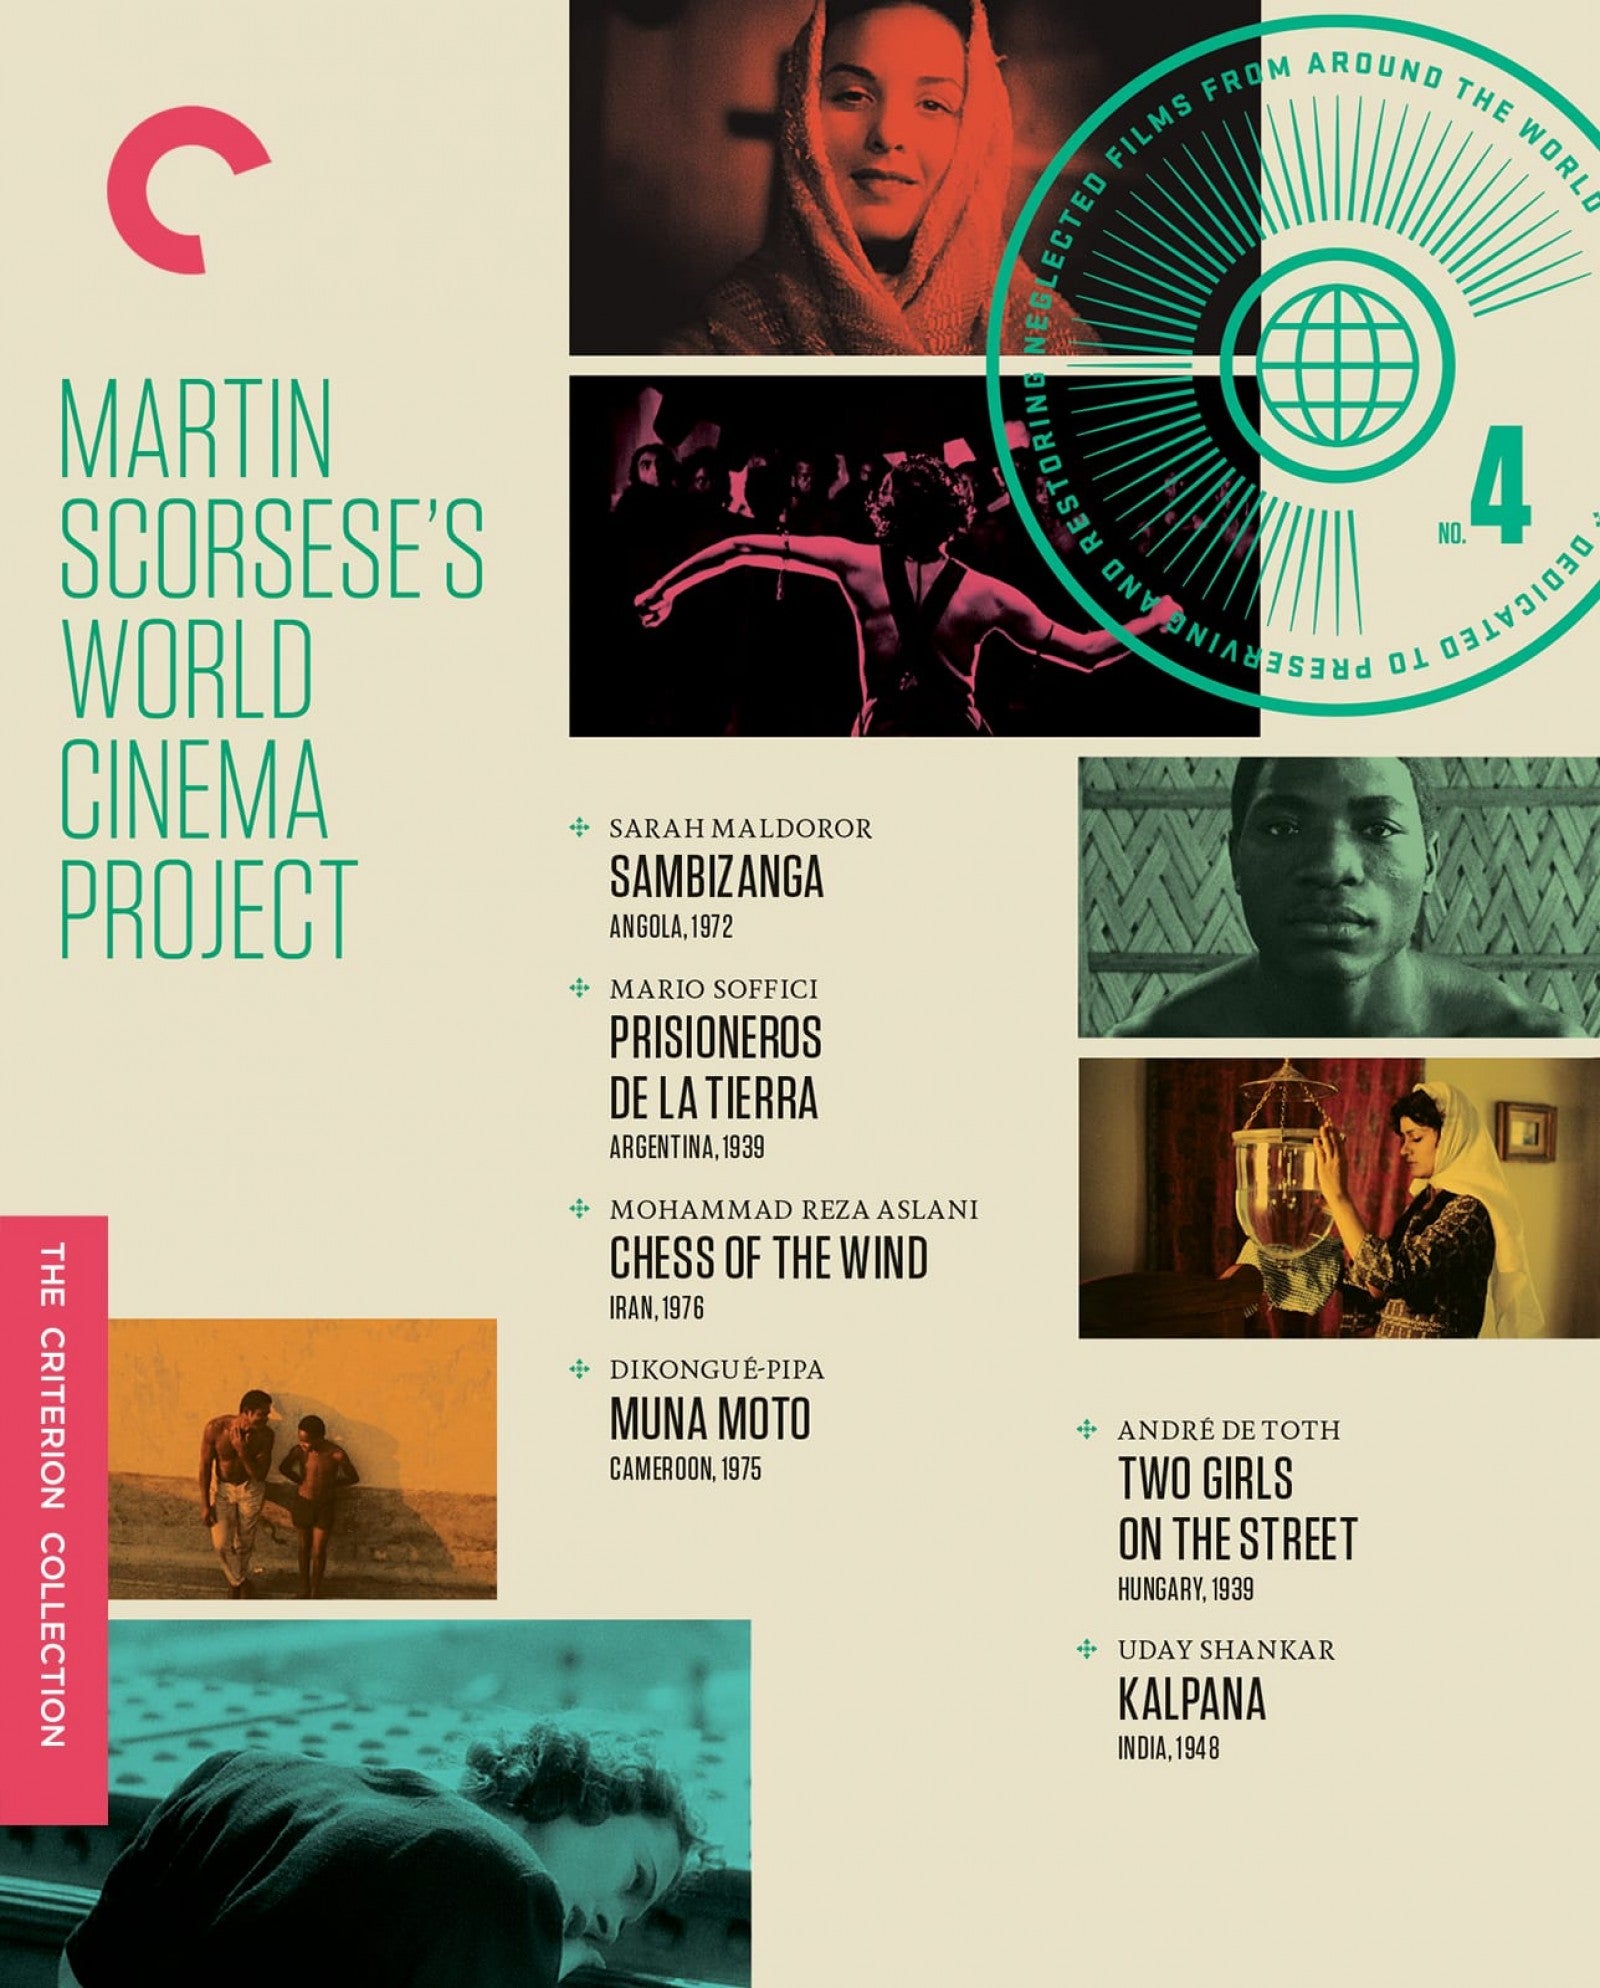 Le projet de cinéma du monde n°4 de Martin Scorsese